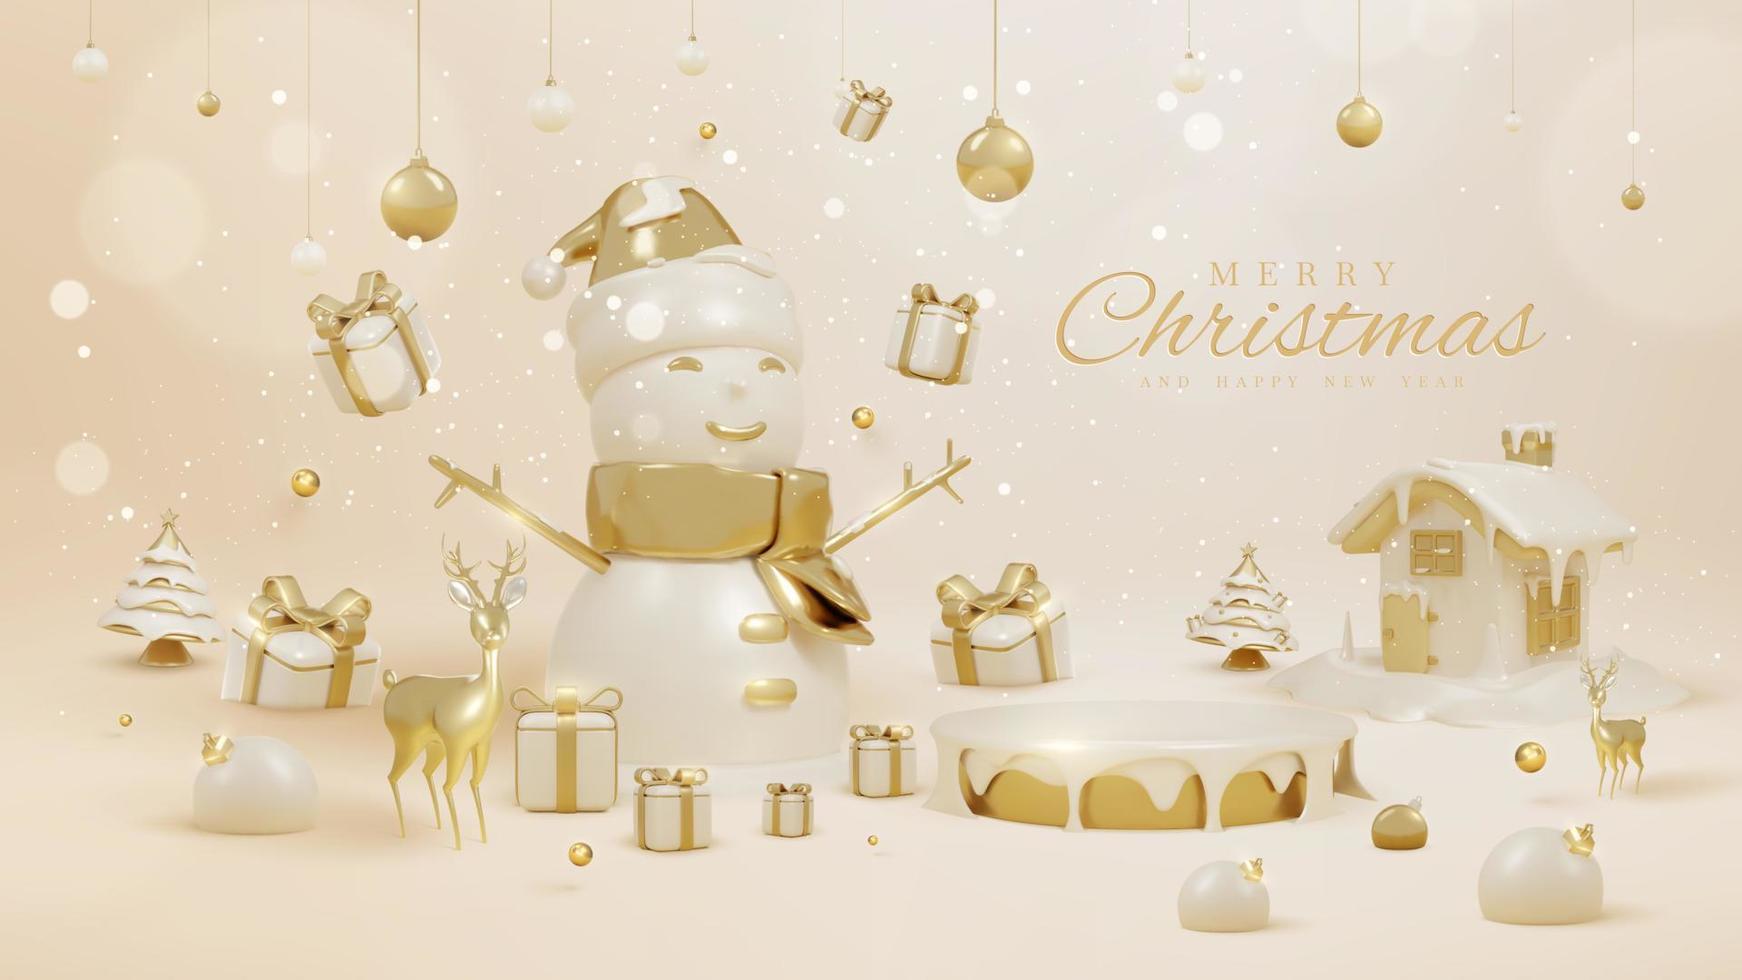 Product Scherm podium met 3d realistisch Kerstmis ornamenten en sprankelend licht Effecten met bokeh decoraties en sneeuw. vector illustratie.